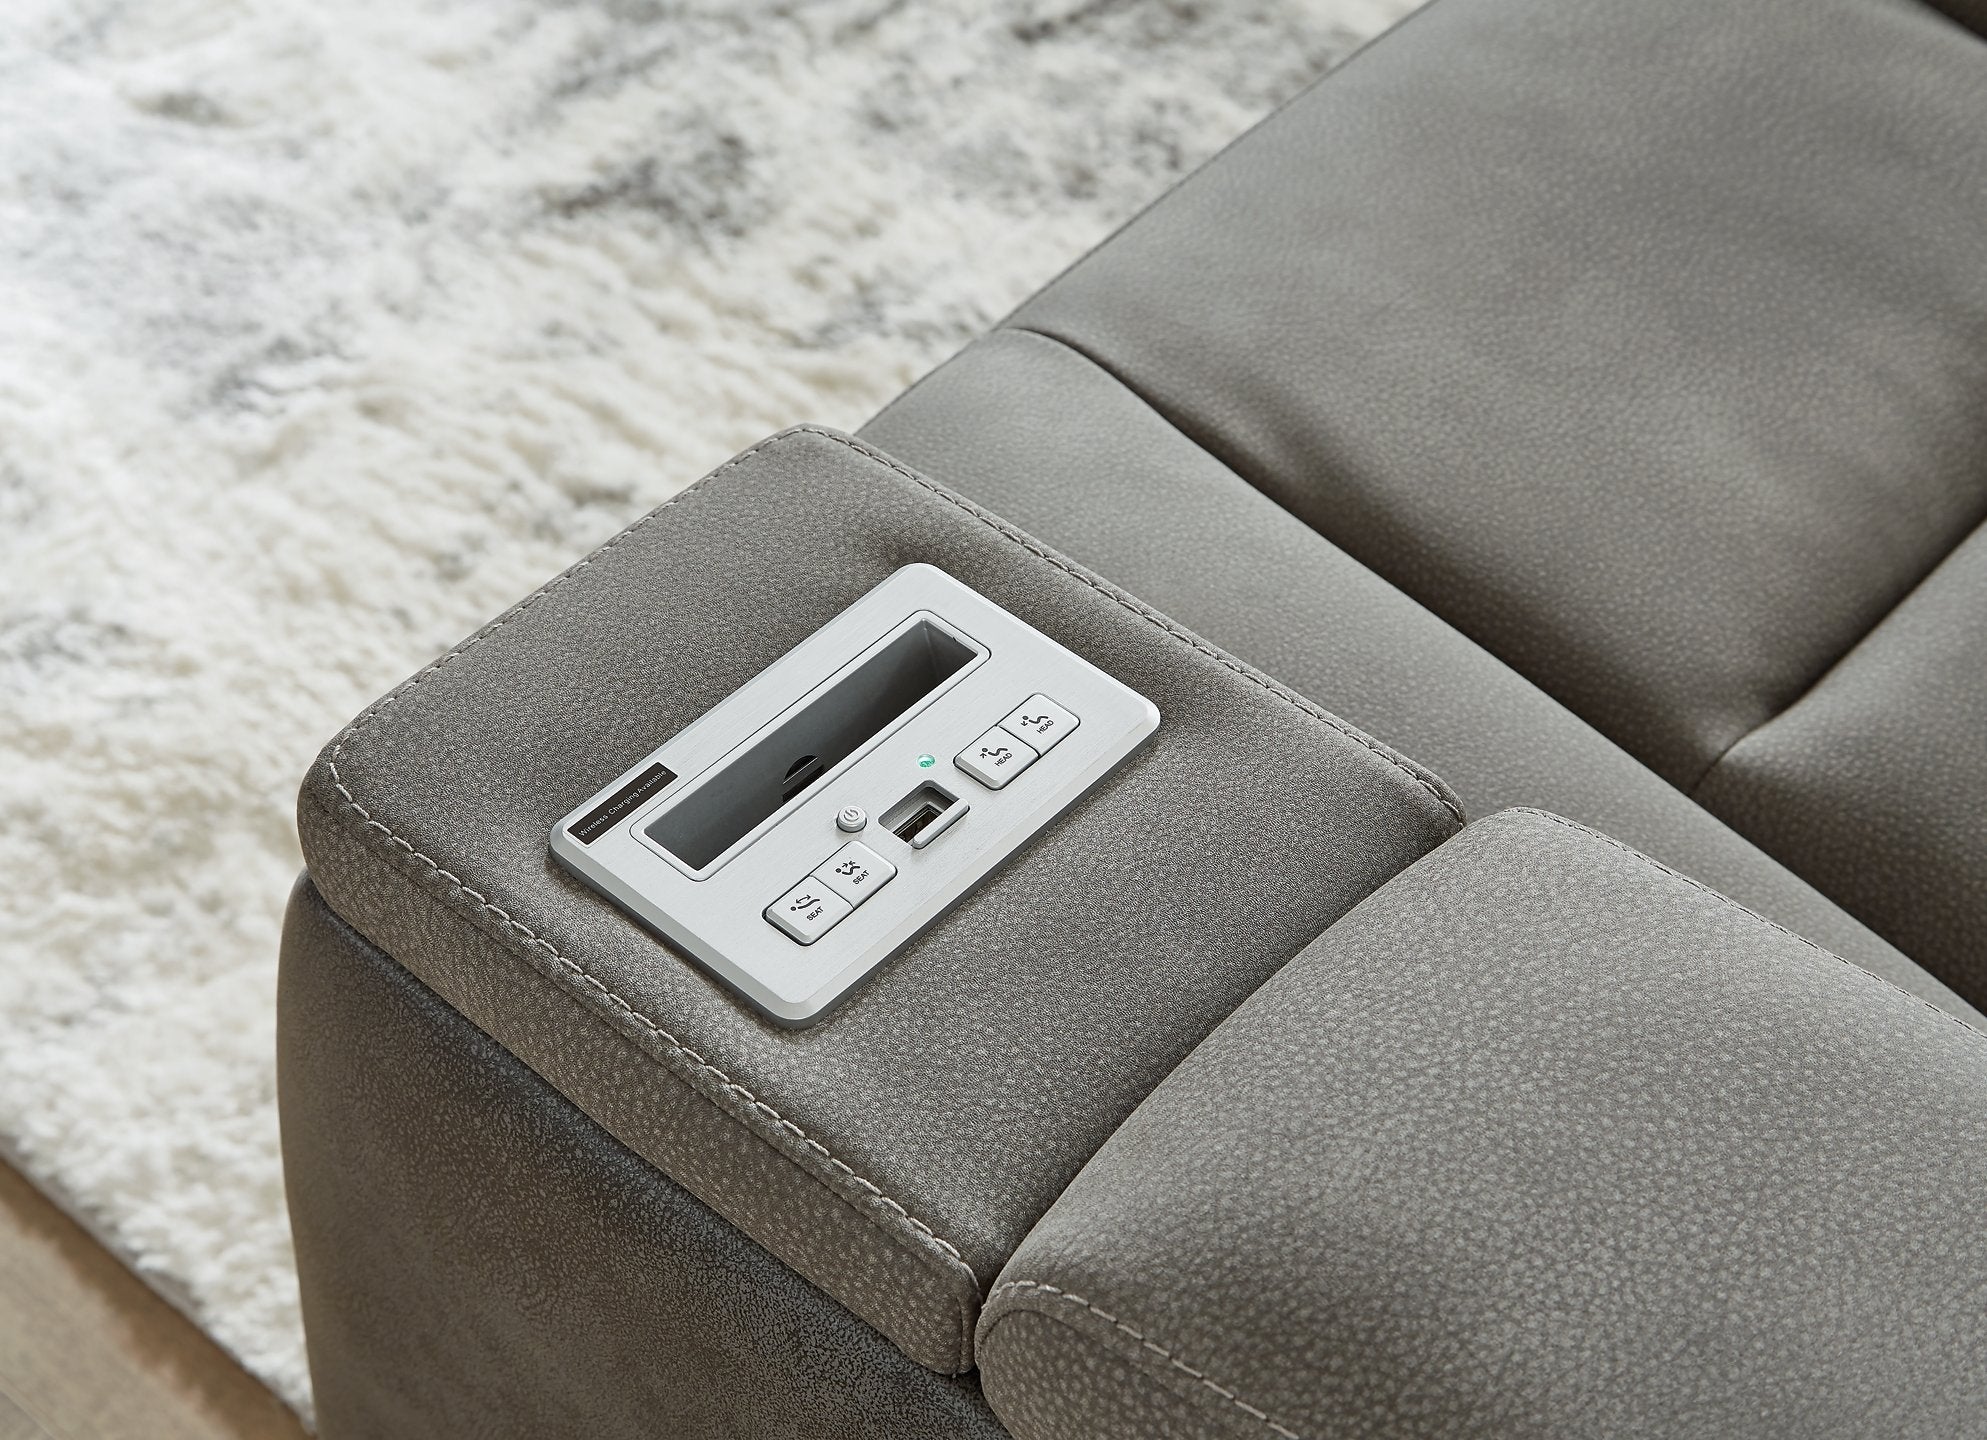 Next-Gen DuraPella Power Reclining Loveseat with Console - Luxury Home Furniture (MI)